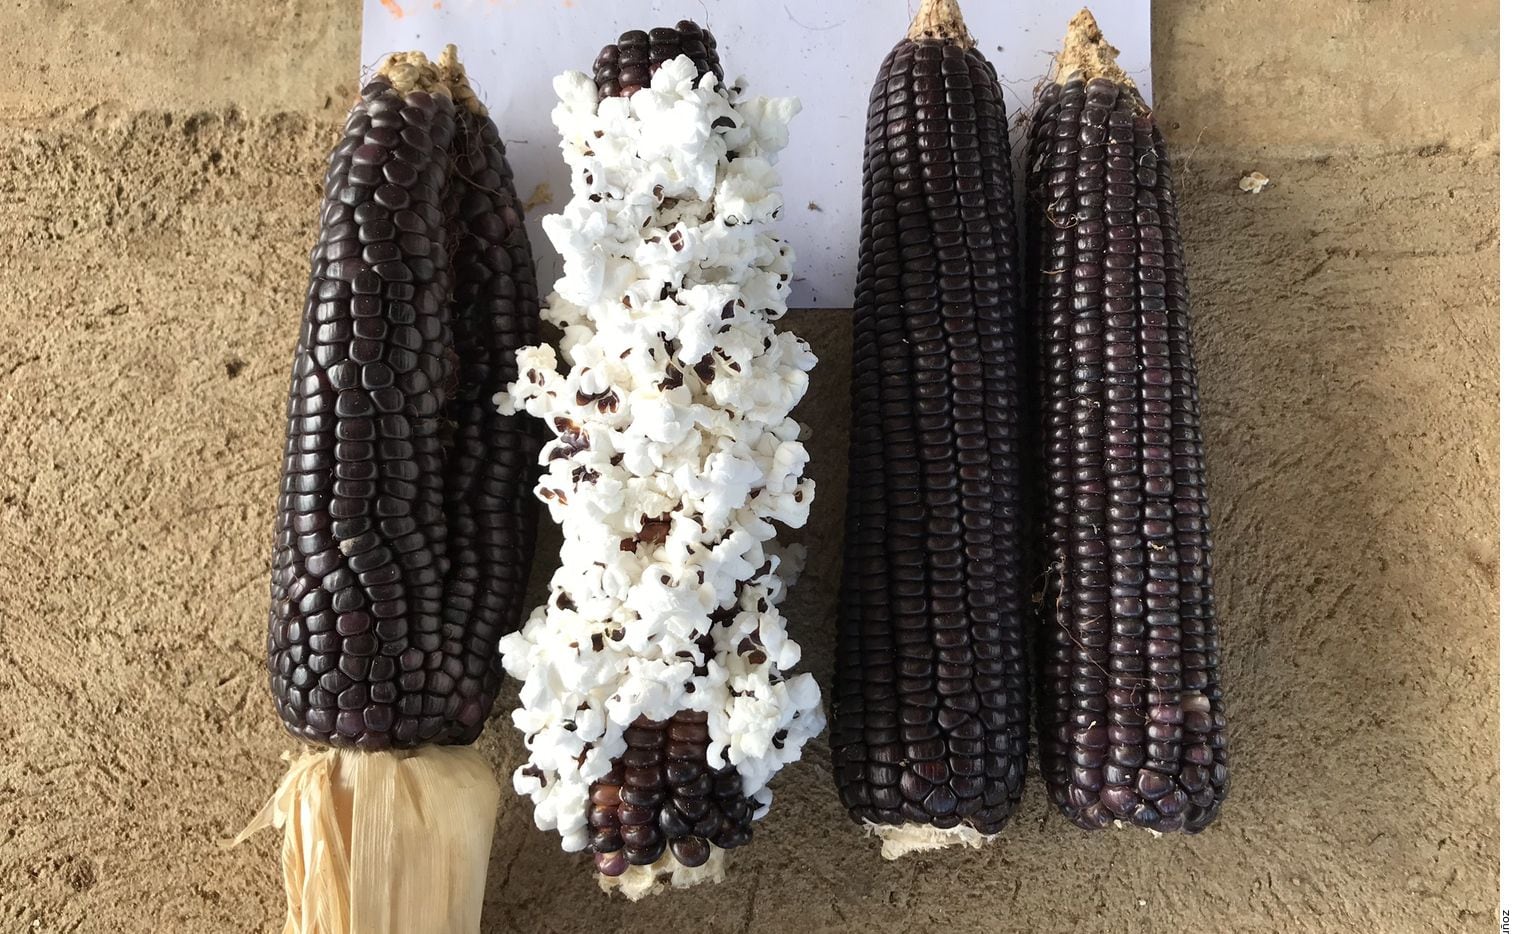 Las palomitas de maíz tiene su origen en México